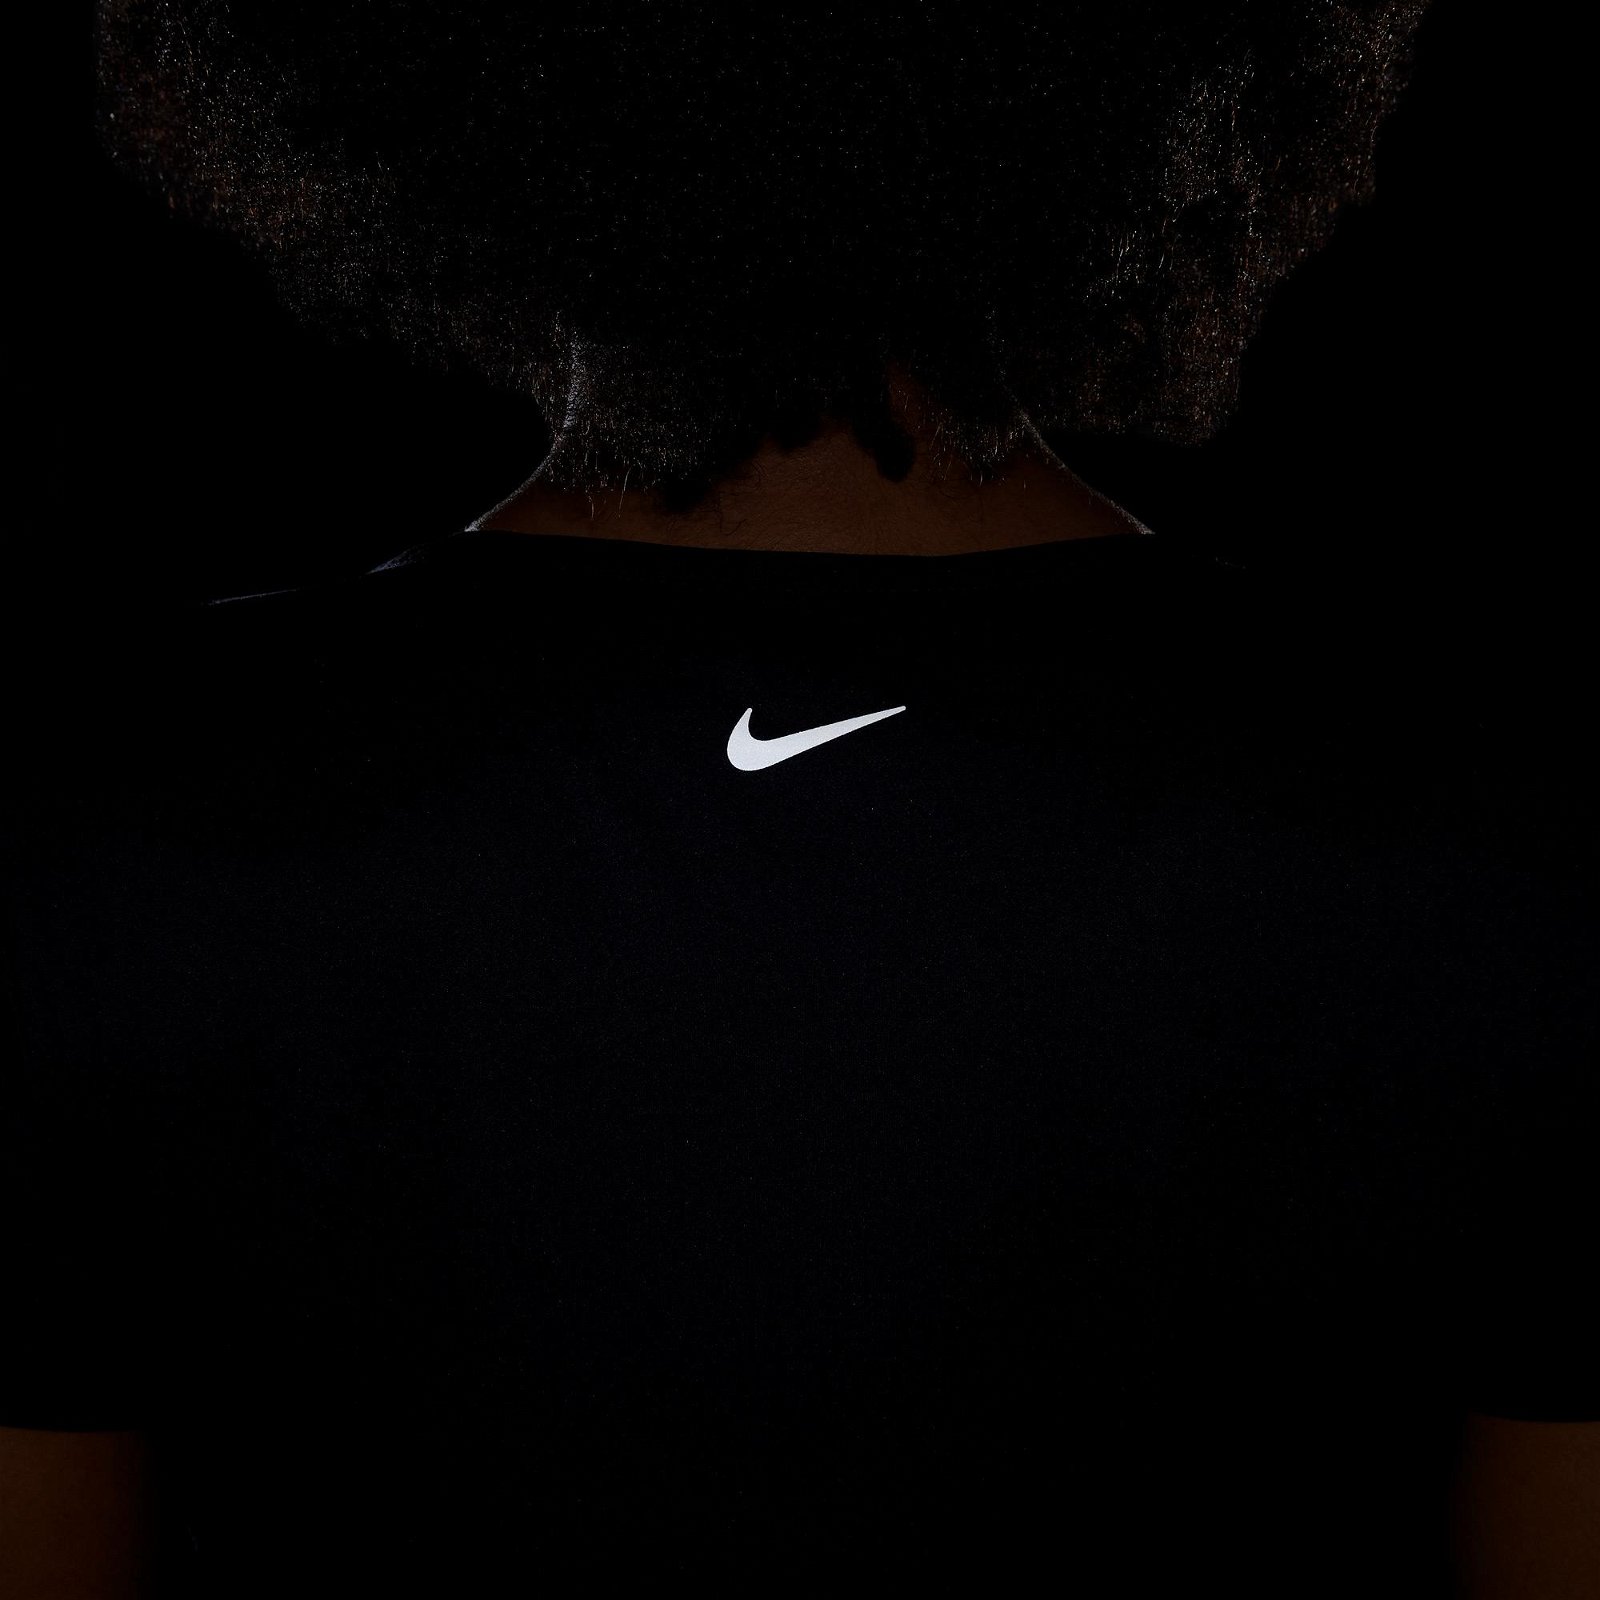 Nike Swoosh Run Kadın Siyah T-Shirt